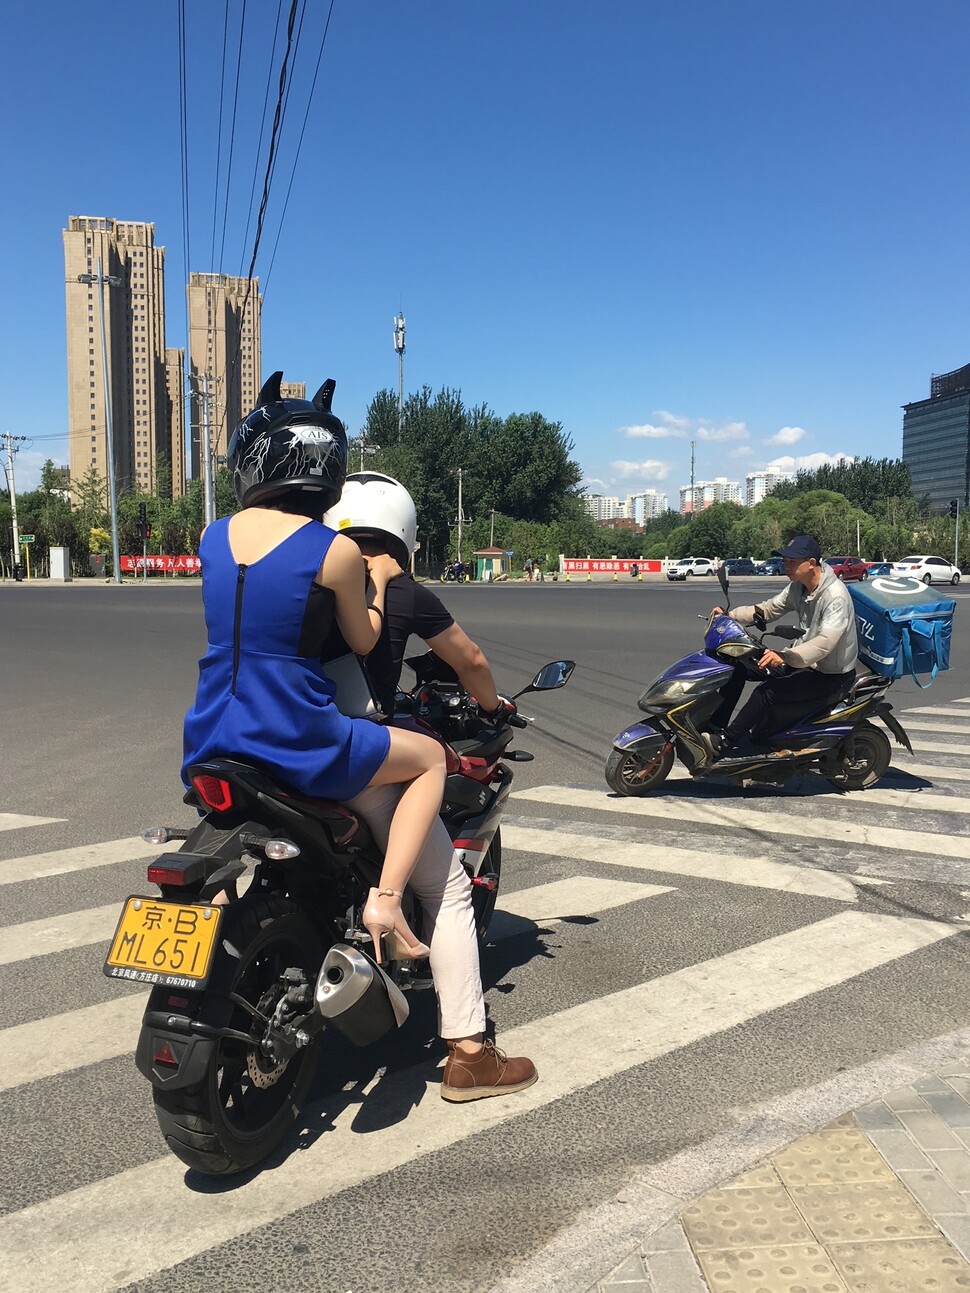 사회주의 중국에선 대다수 중국 여성이 전족을 한 채 평생을 뒤뚱거리며 살았지만, 신중국에서는 하이힐을 신고 자전거나 오토바이를 타고 쌩쌩 달린다. 베이징 알리바바 본사 사거리에서 오토바이 뒷좌석에 앉은 여성.